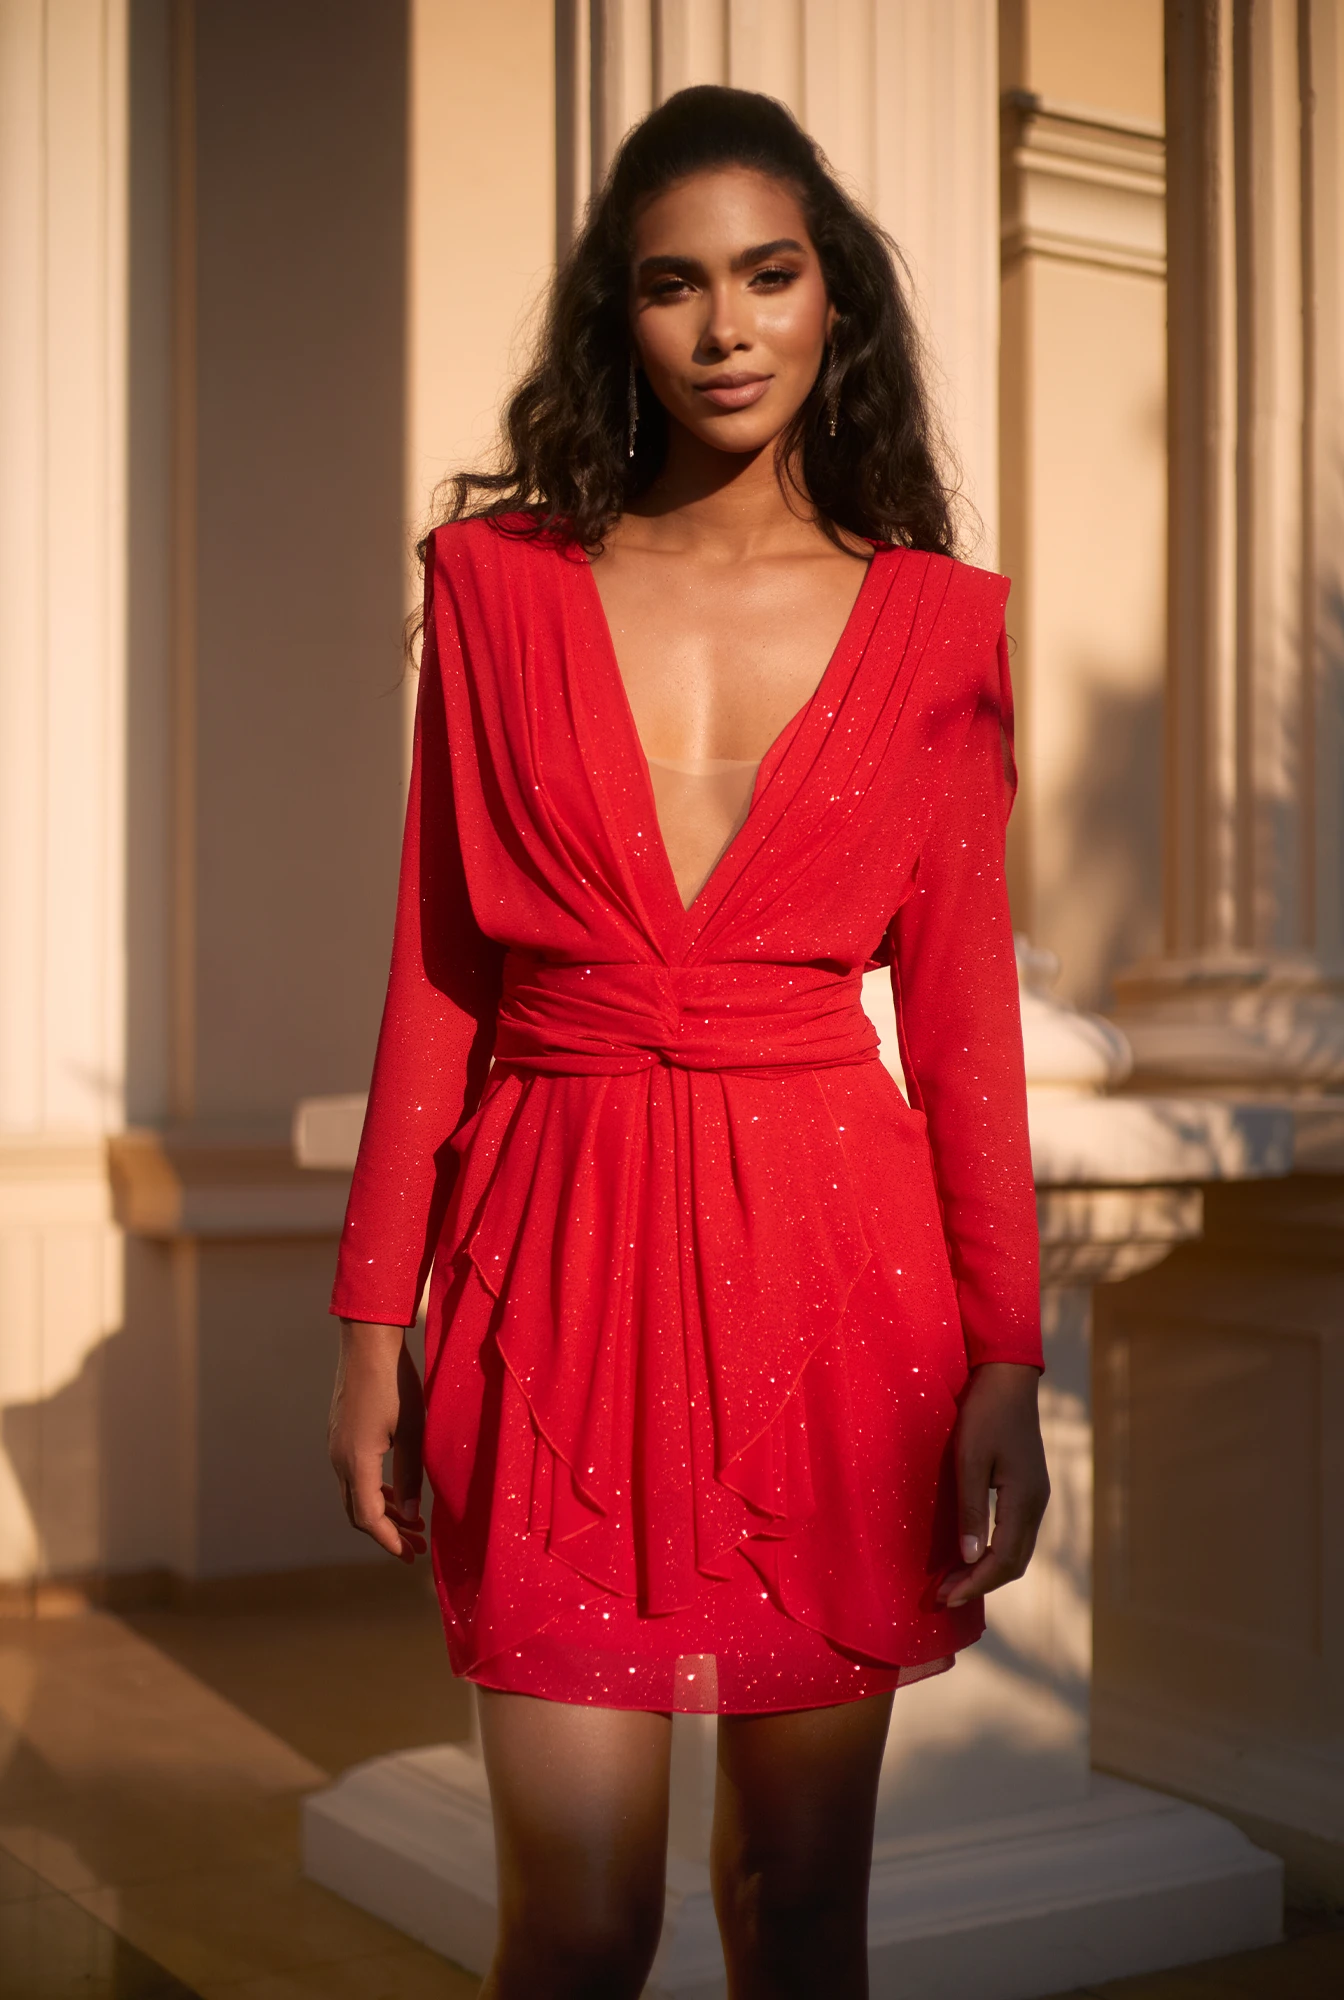 Kinzly - ein spektakuläres Kleid in einem intensiven Rot mit Glitzer